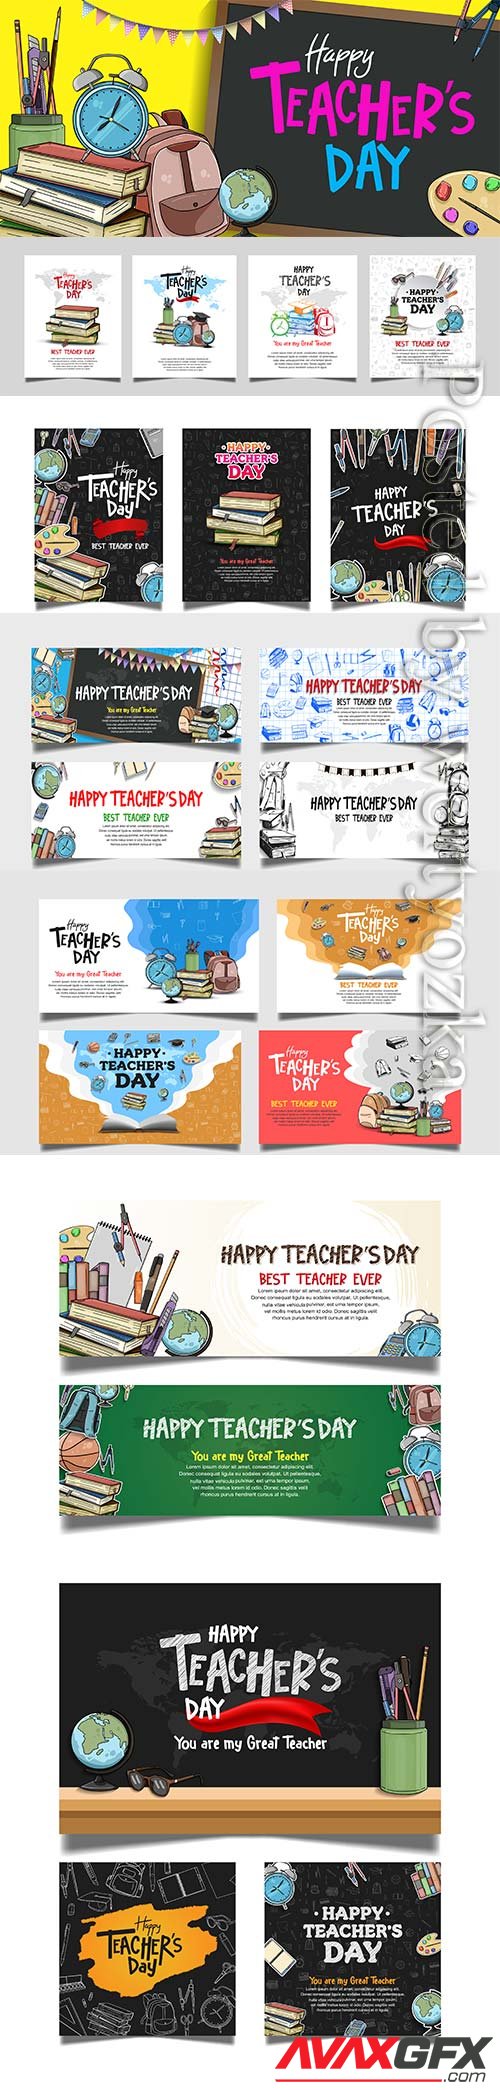 Happy teachers day vector banner